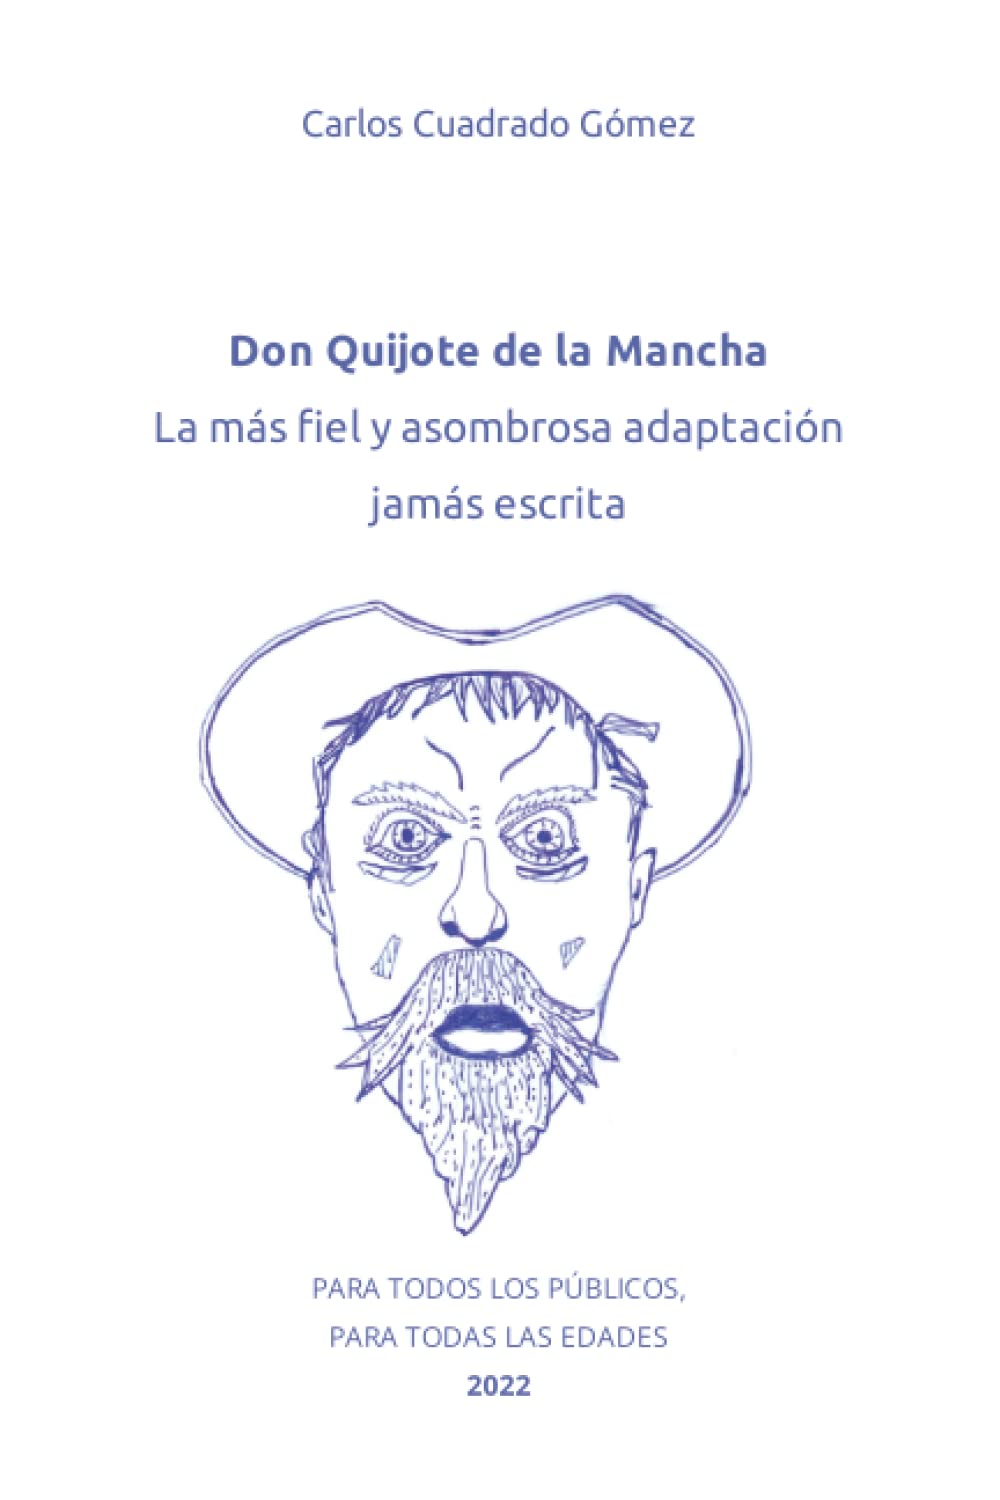 Presentación de libro Don Quijote de la Mancha,  adaptación de Carlos Cuadrado